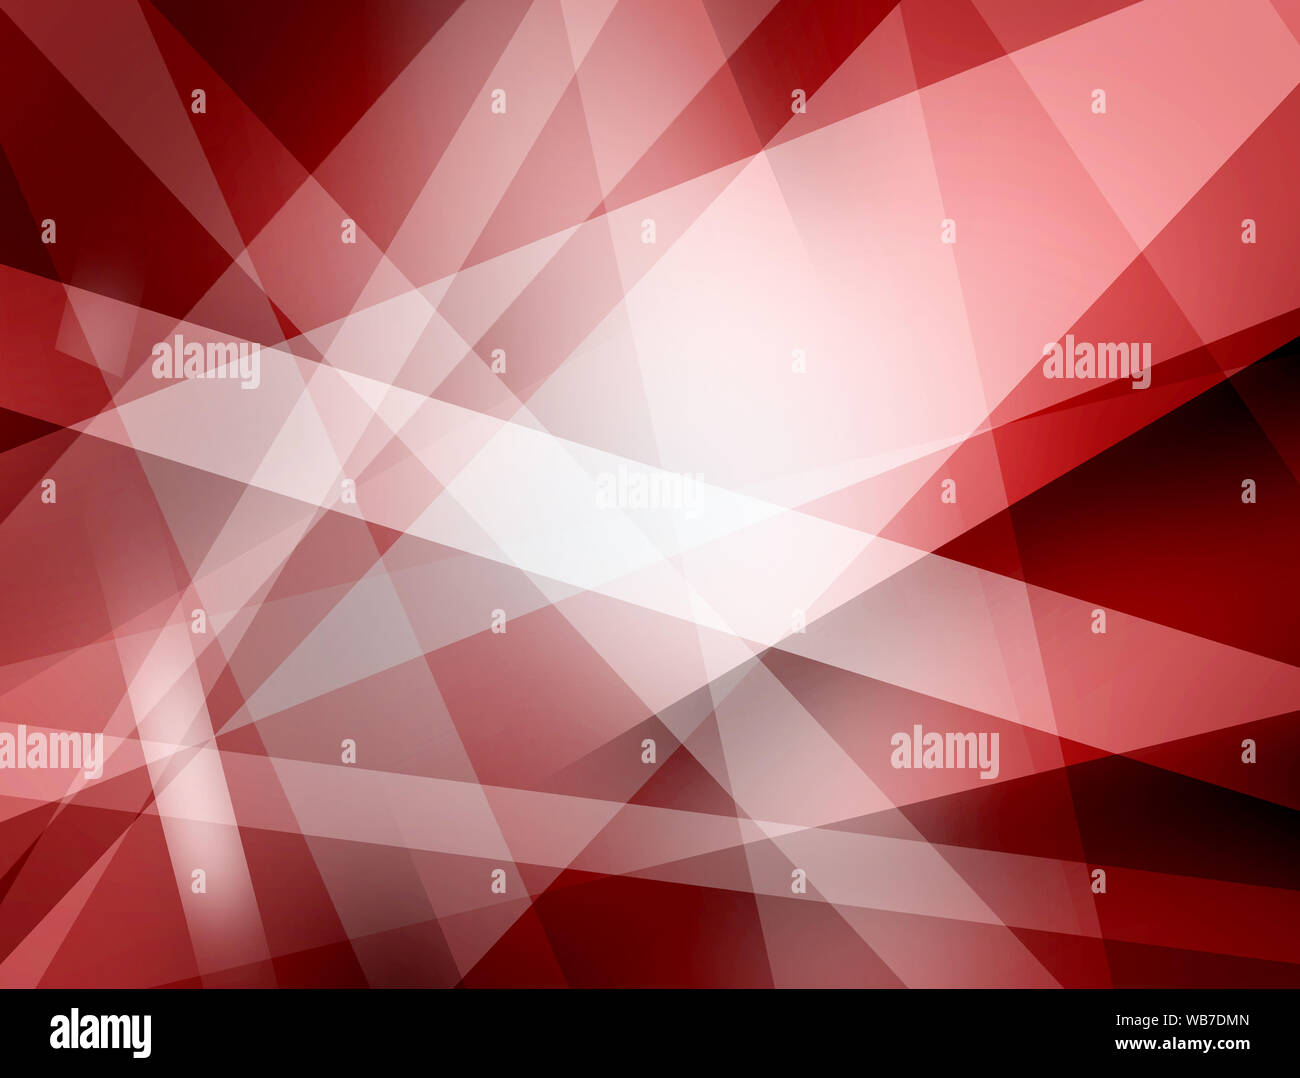 Fondo abstracto rojo con franjas blancas y formas triangulares en el moderno diseño del patrón geométrico con sombras negras Foto de stock